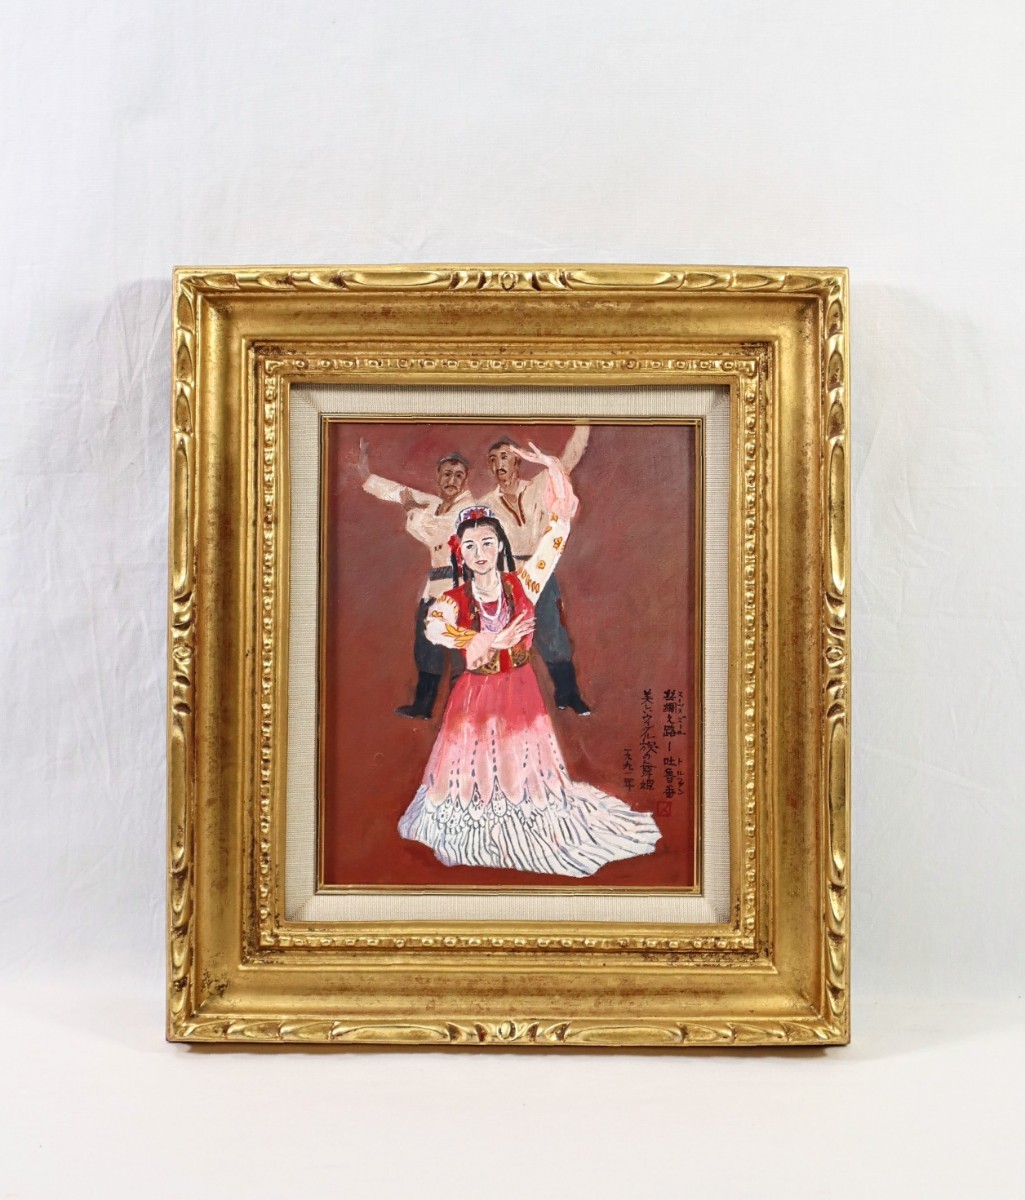 عمل حقيقي من قبل كاتسوهيتو ناكامورا, 1991 لوحة زيتية توربان راقصة أويغورية جميلة مقاس F3, من ولاية ناغازاكي, غير منتسب, منطقة شينجيانغ الويغورية ذاتية الحكم, الصين, رقصة عرقية رائعة, 8028, تلوين, طلاء زيتي, صور